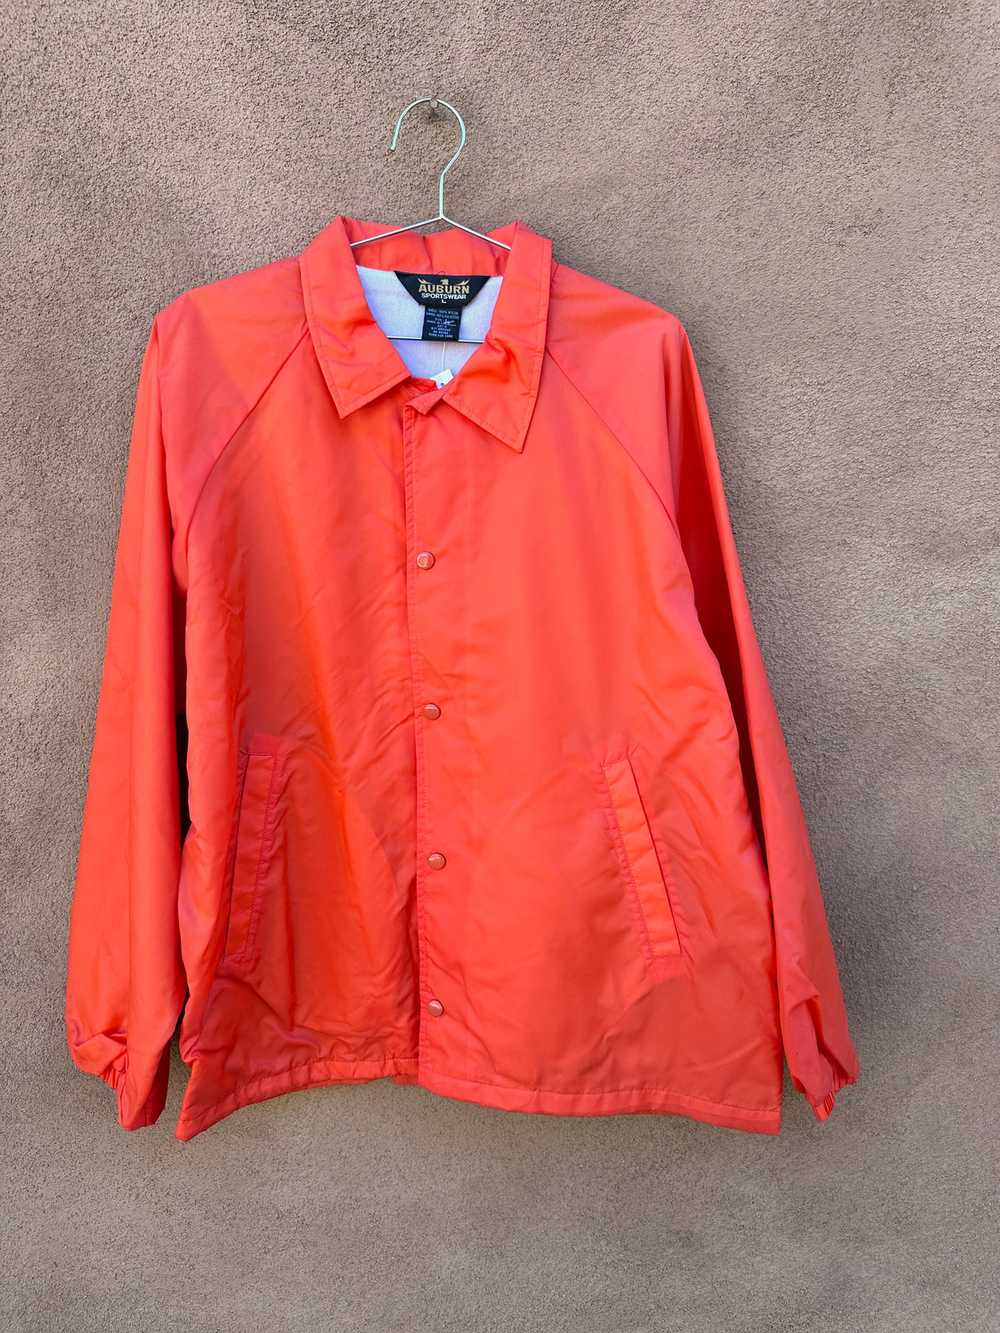 Hunter Orange Nylon Jacket - image 1